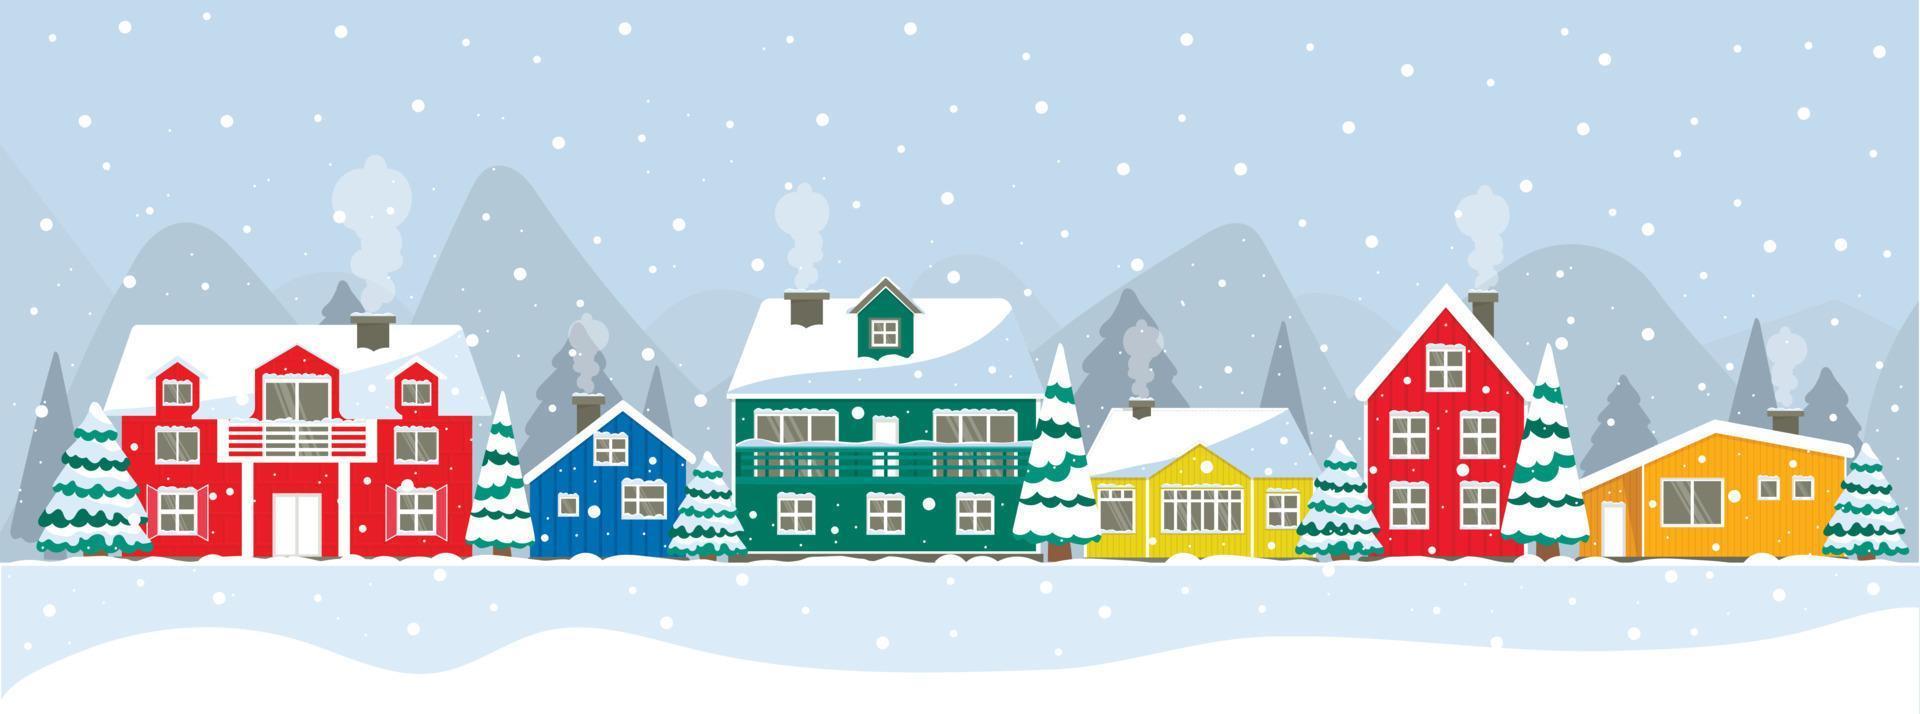 set van kleurrijke huizen. rood, oranje, groen, blauw huis van de inwoners van Groenland, IJsland, Noordpool, Holland. besneeuwd dak en ramen, de buitenkant van het nieuwe jaar. kerstboom in de tuin vector